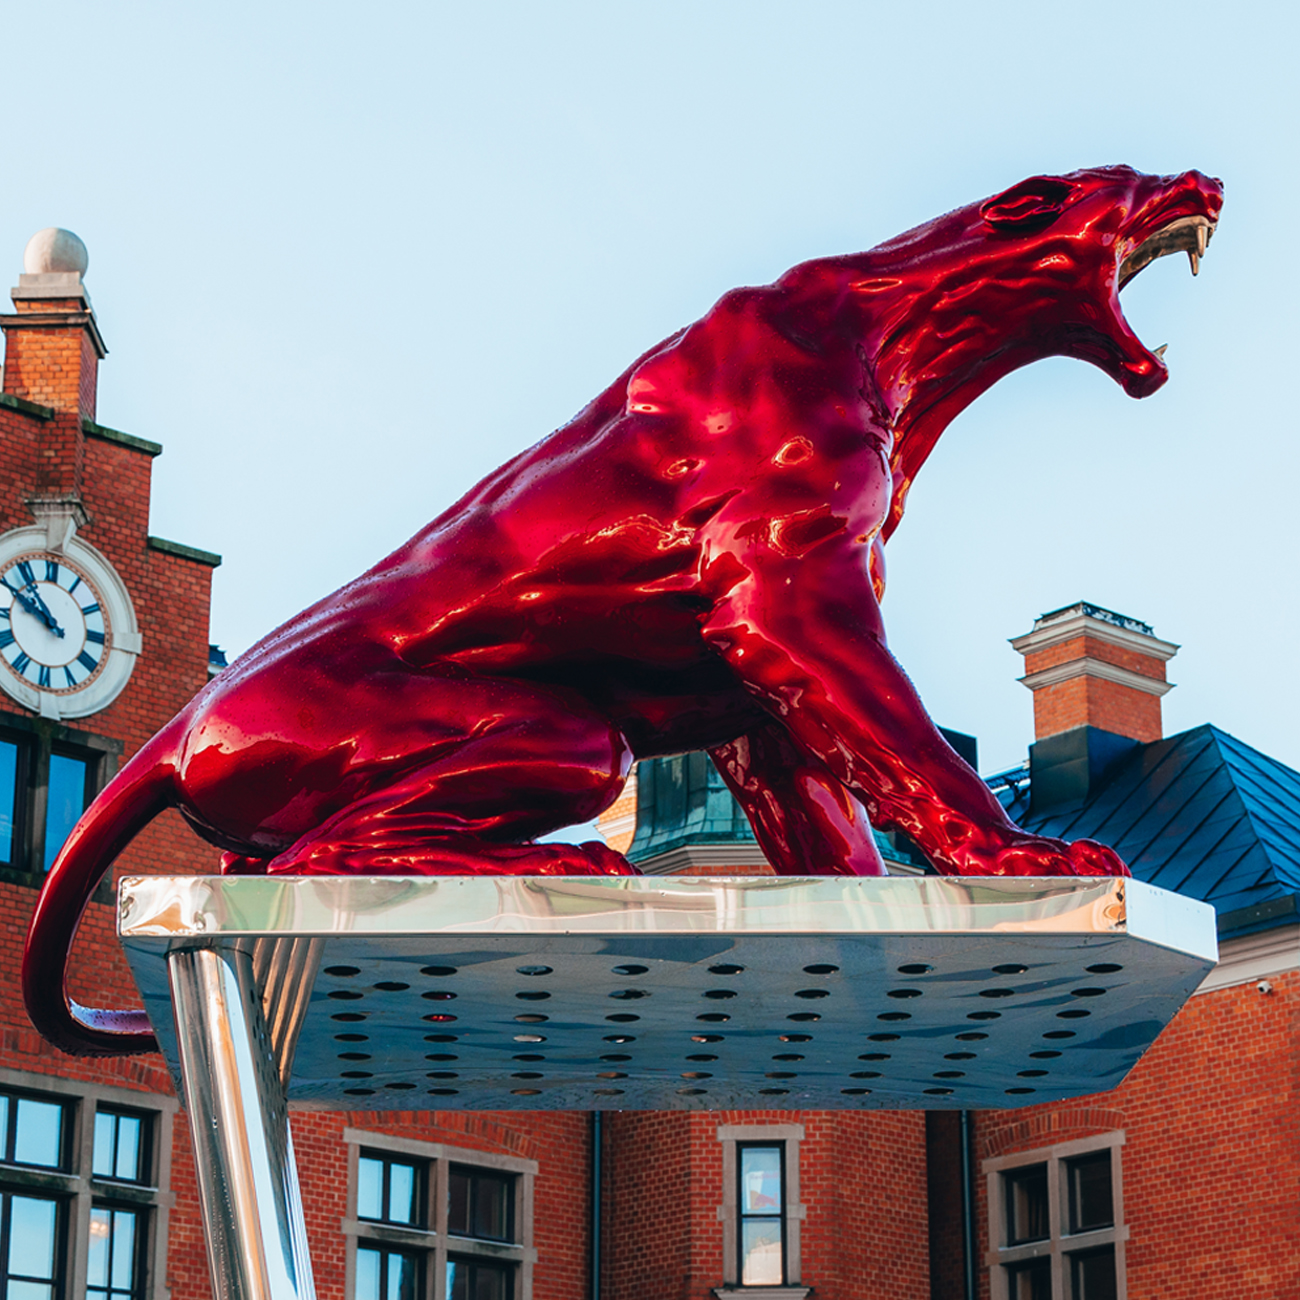 A red shiny sculpture of a roaring puma